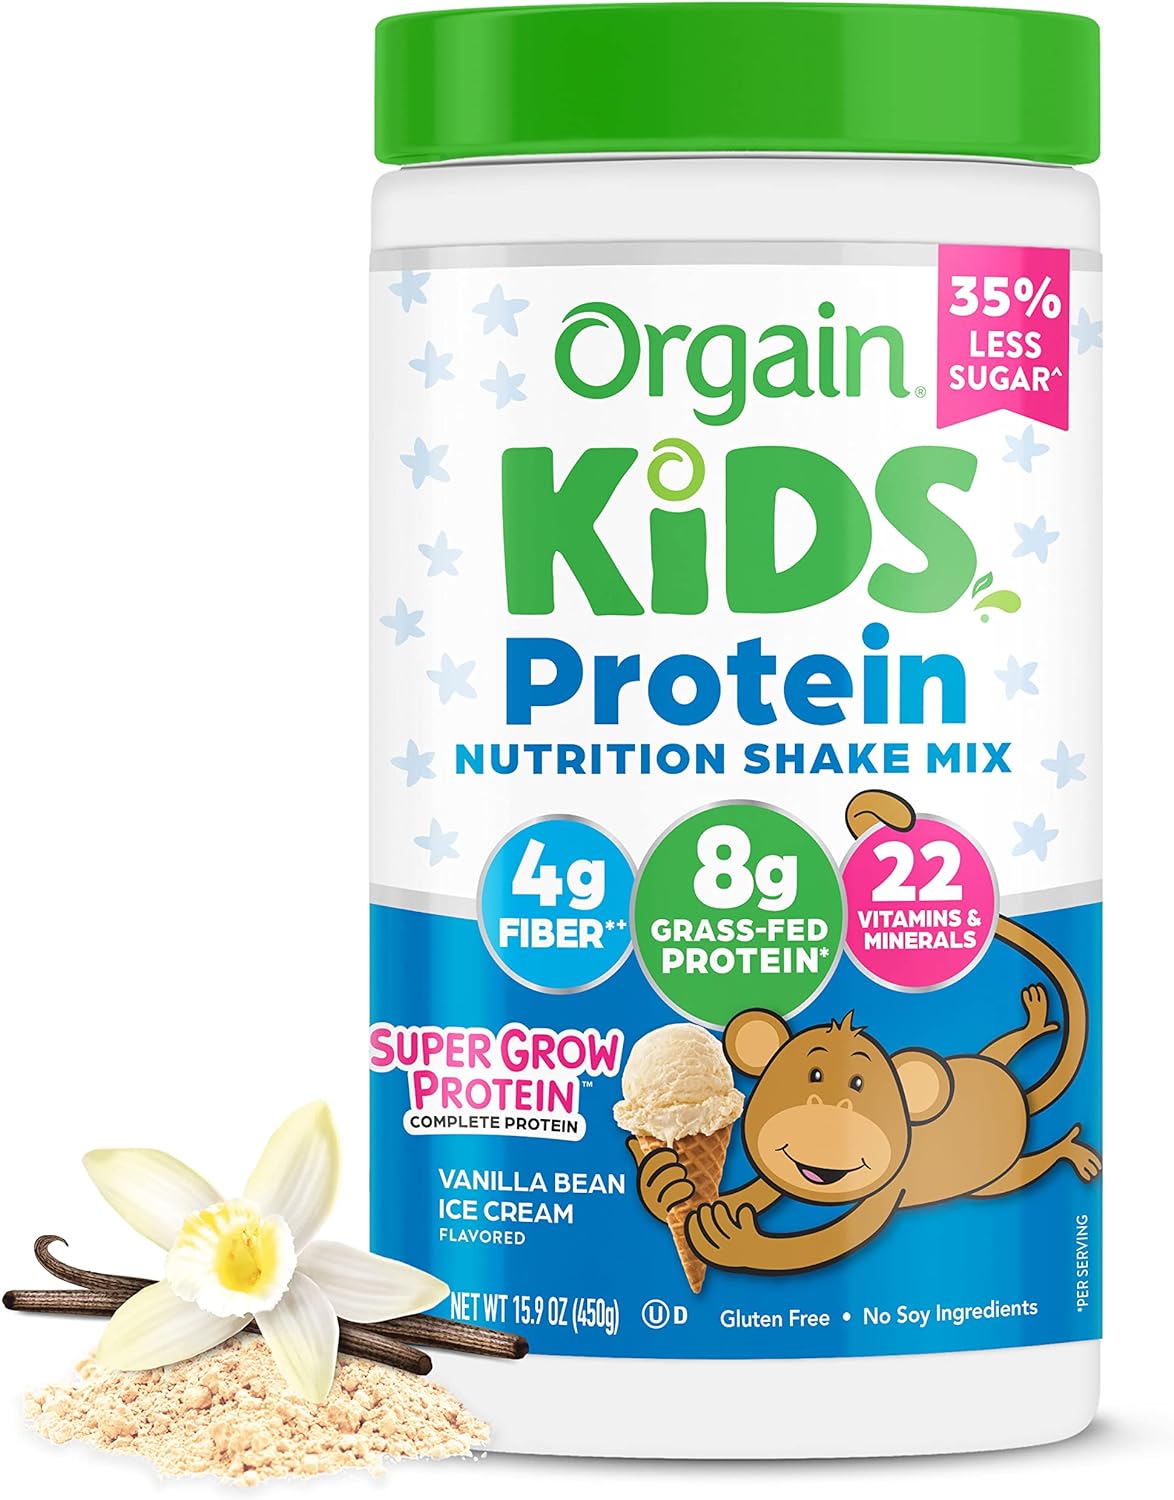 Orgain Kids Protein Powder Shake Mix, Vanilla Bean Ice Cream - 8g Dair1 Pounds